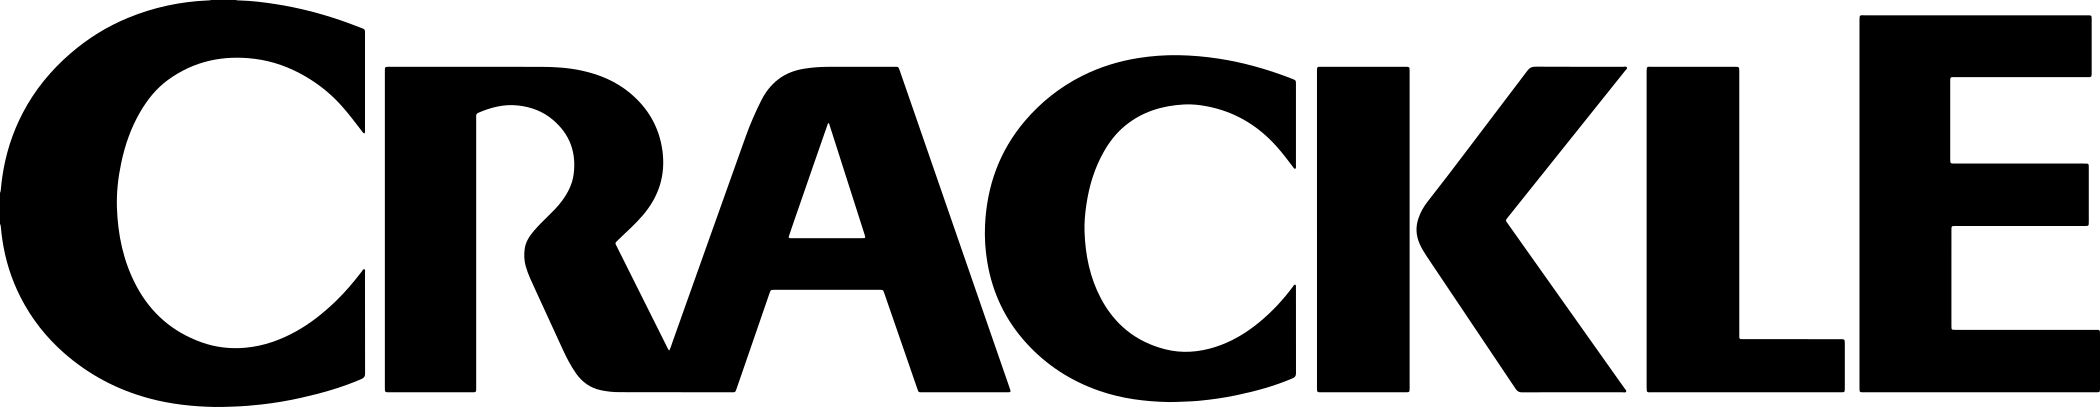 crackle-logo-2